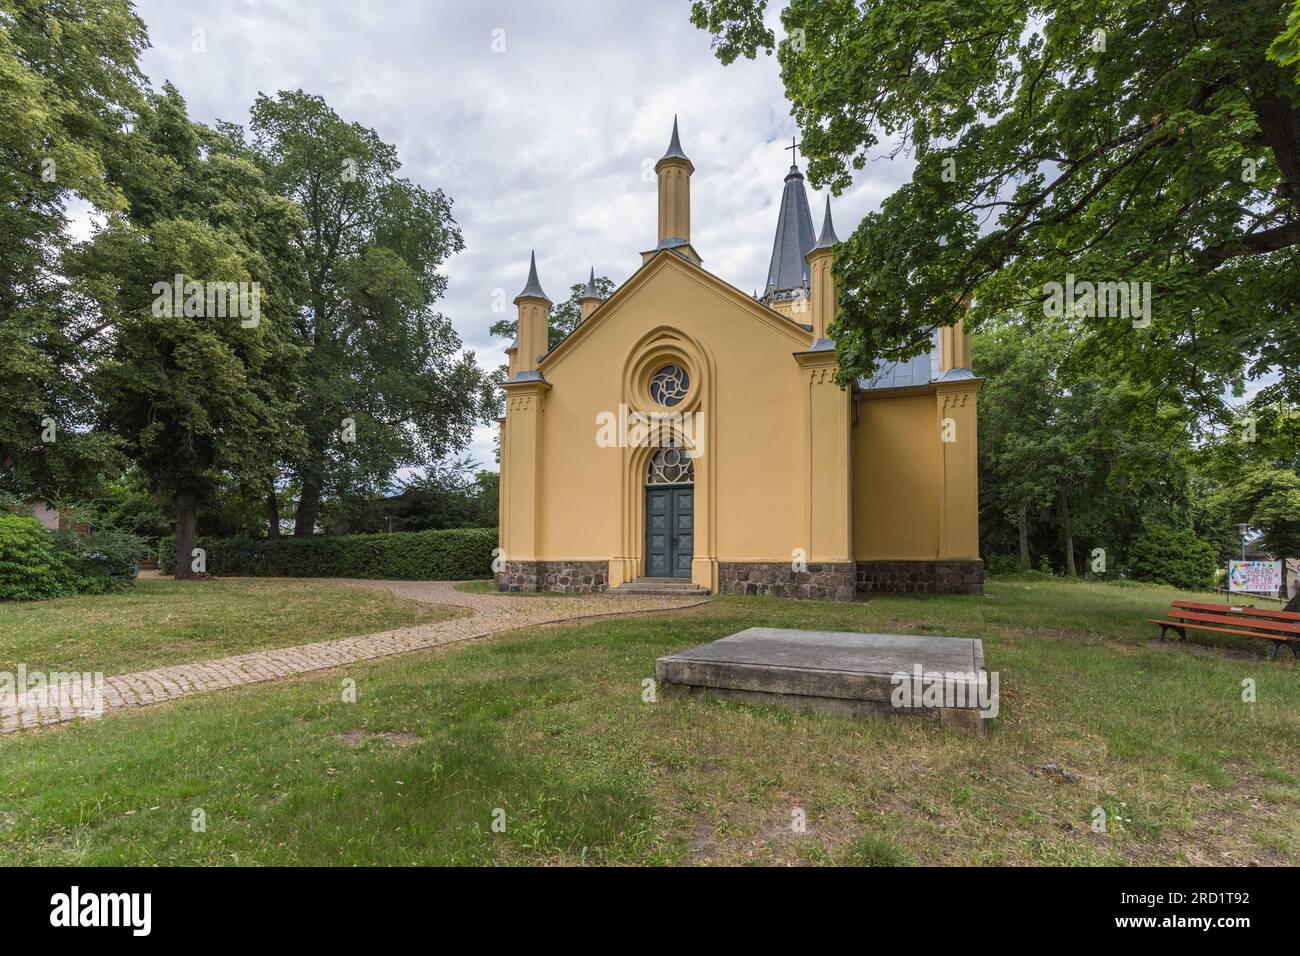 L'église évangélique Schinkel, située à Großbeeren (district de Teltow-Fläming) dans l'État de Brandebourg, a été construite de 1818 à 1820 sur la base d'un Banque D'Images